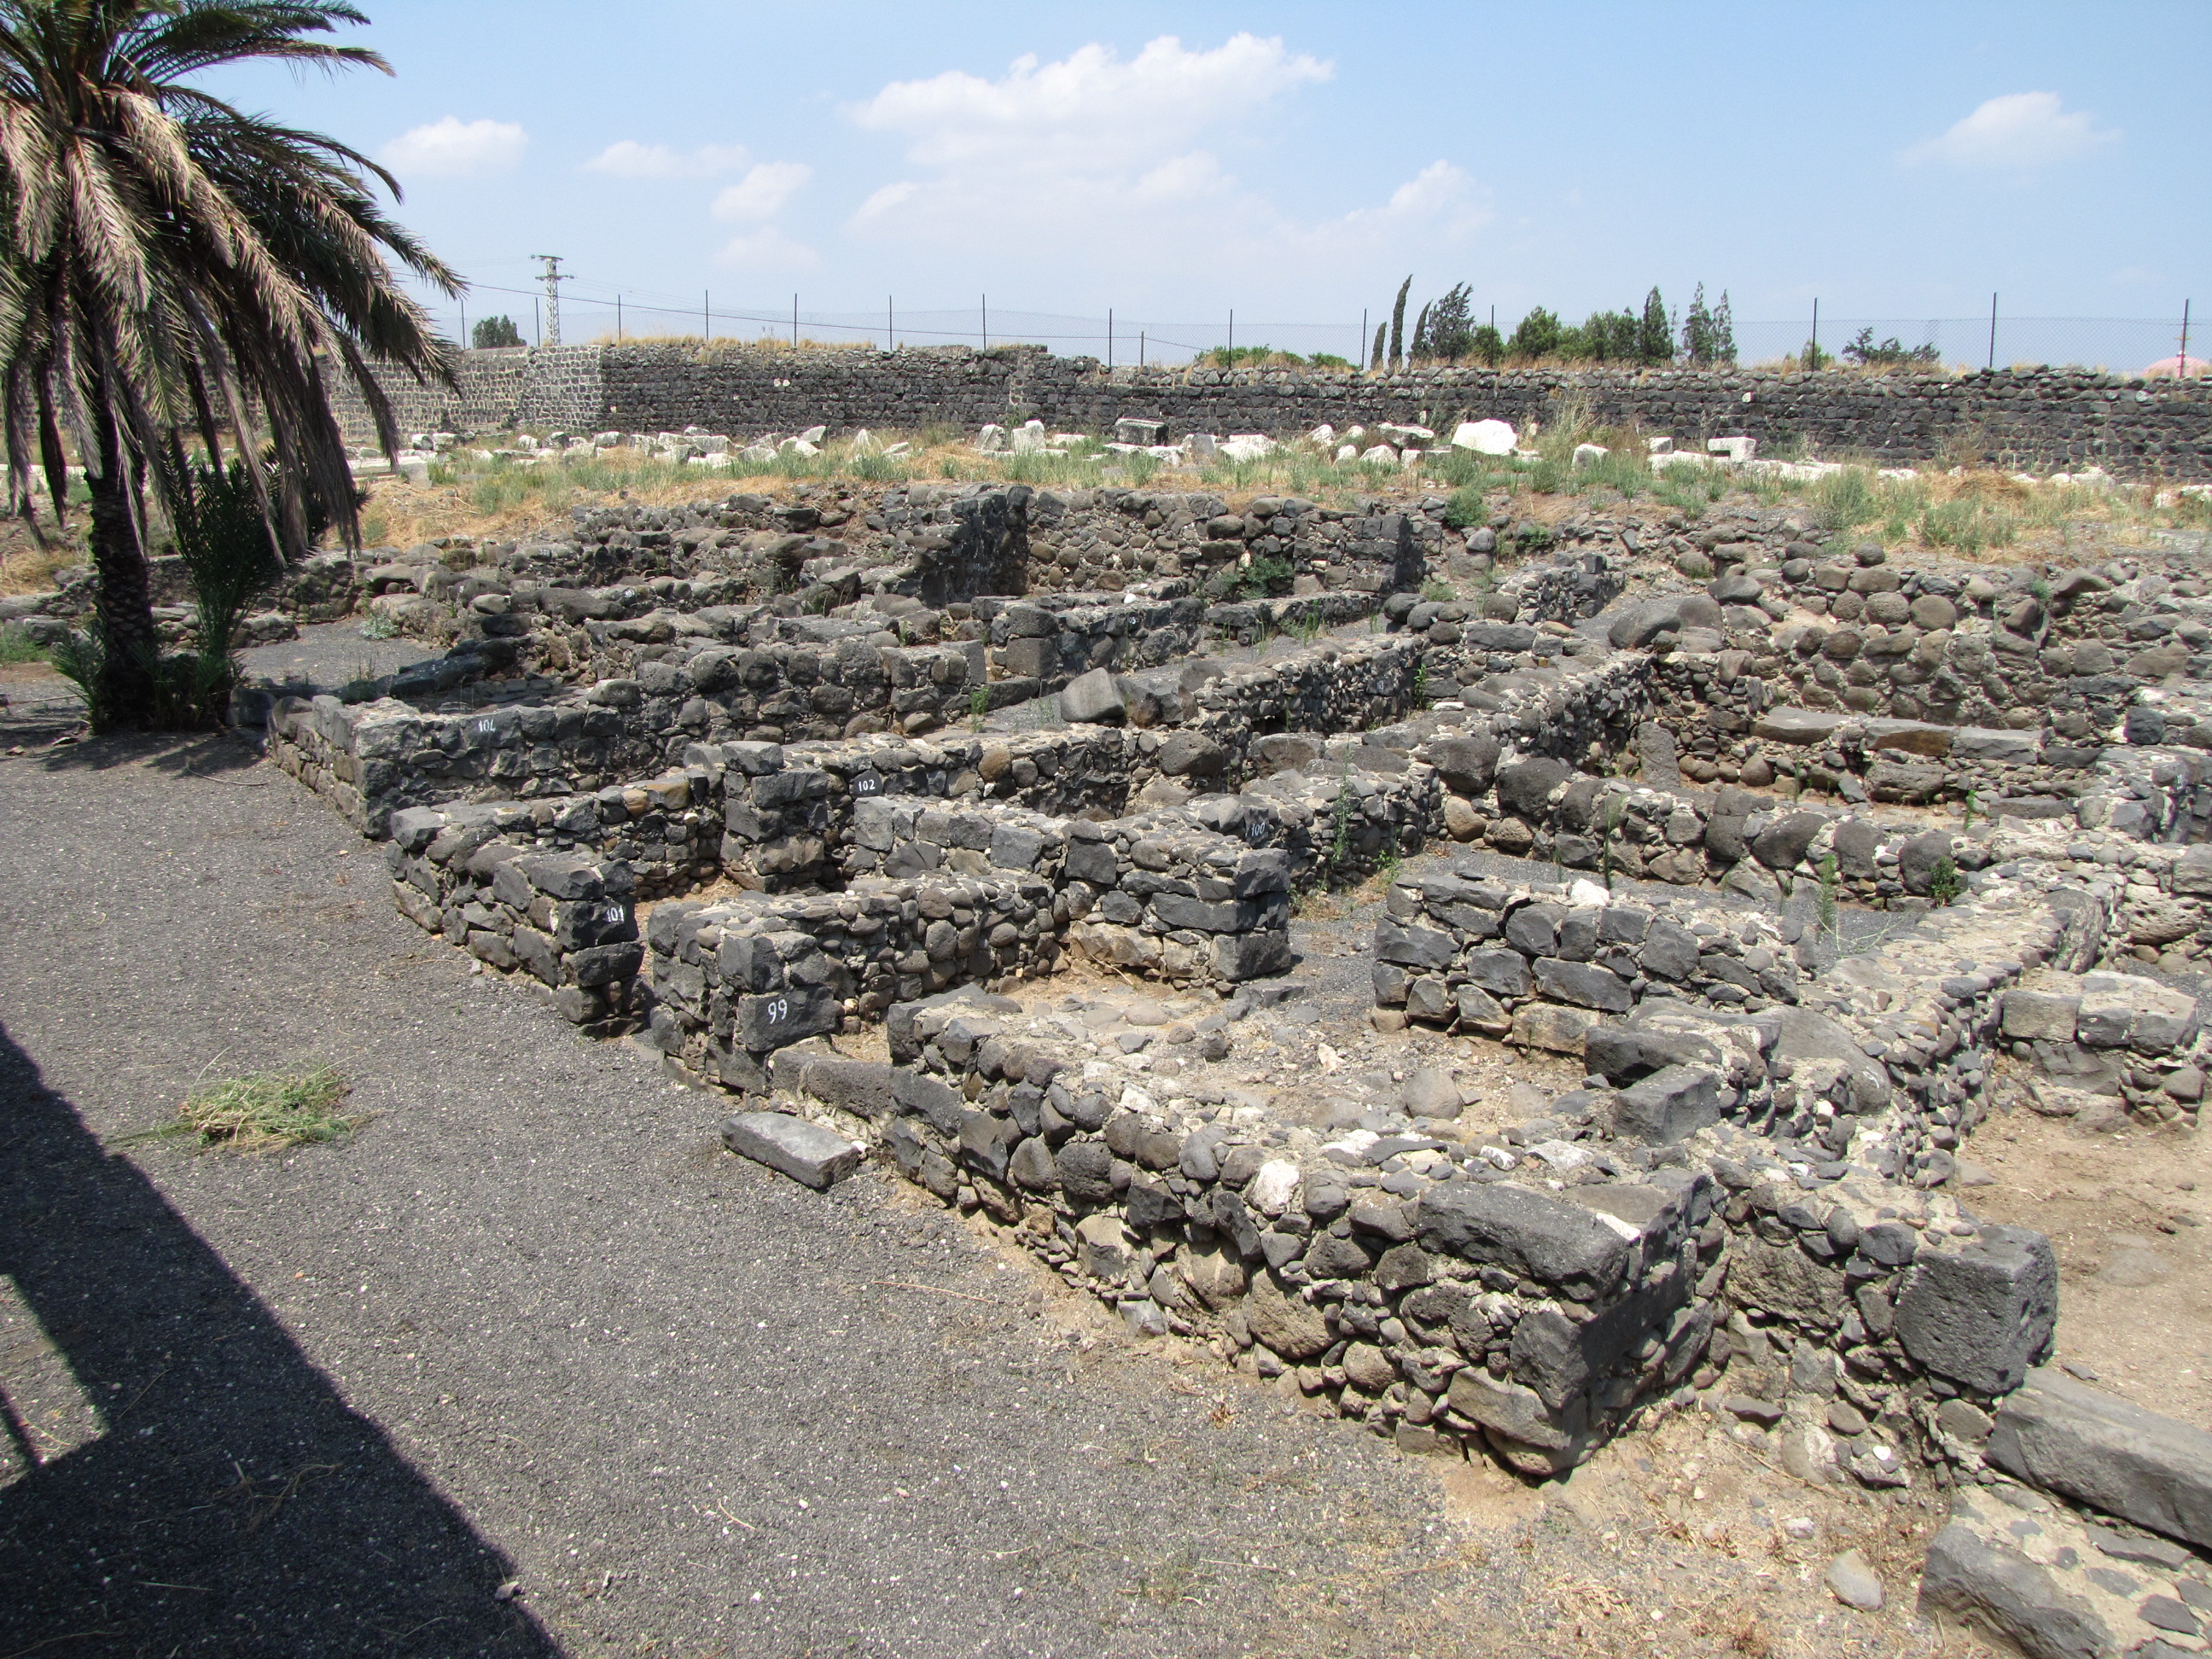 Residential Area of Capernaum